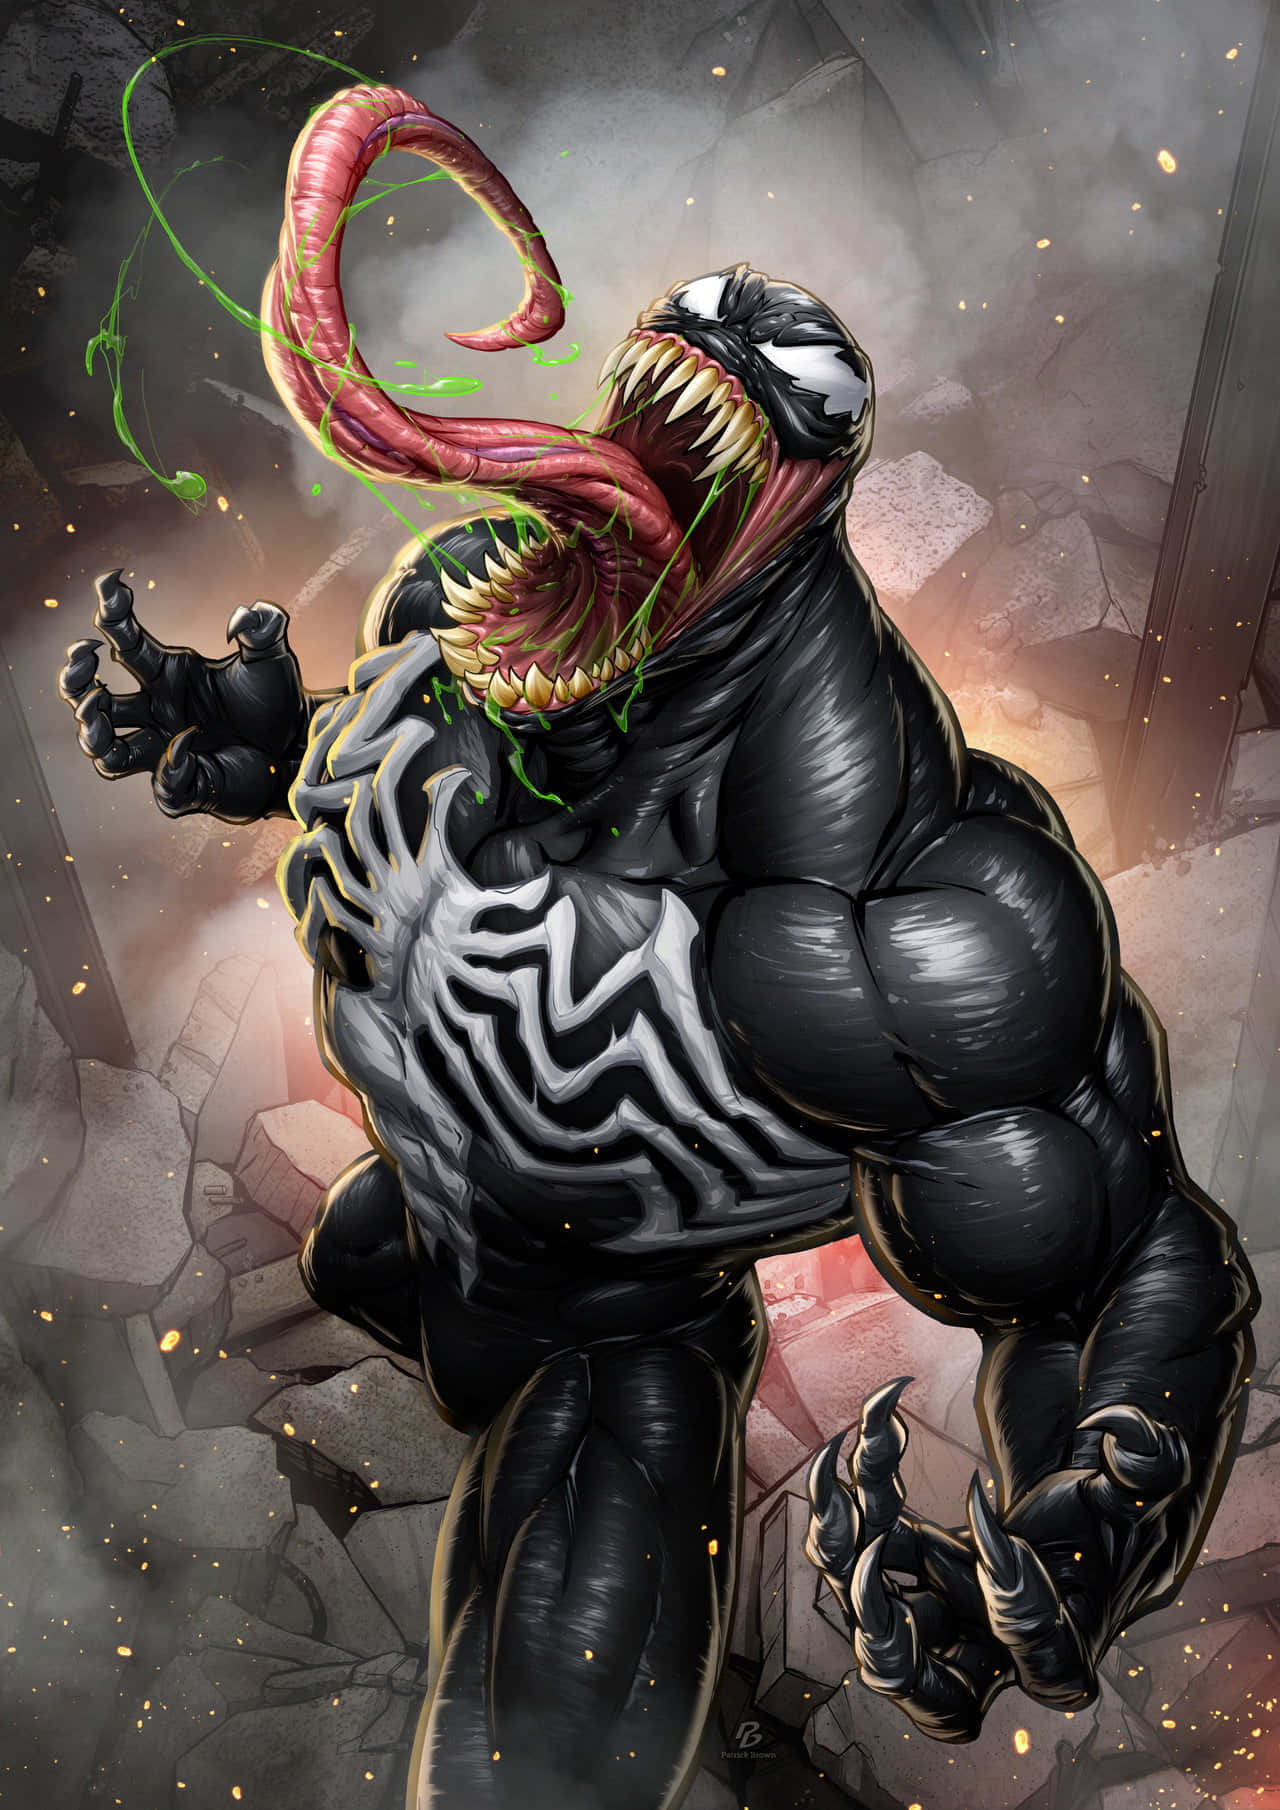 The terrifying Black Venom Spider Wallpaper